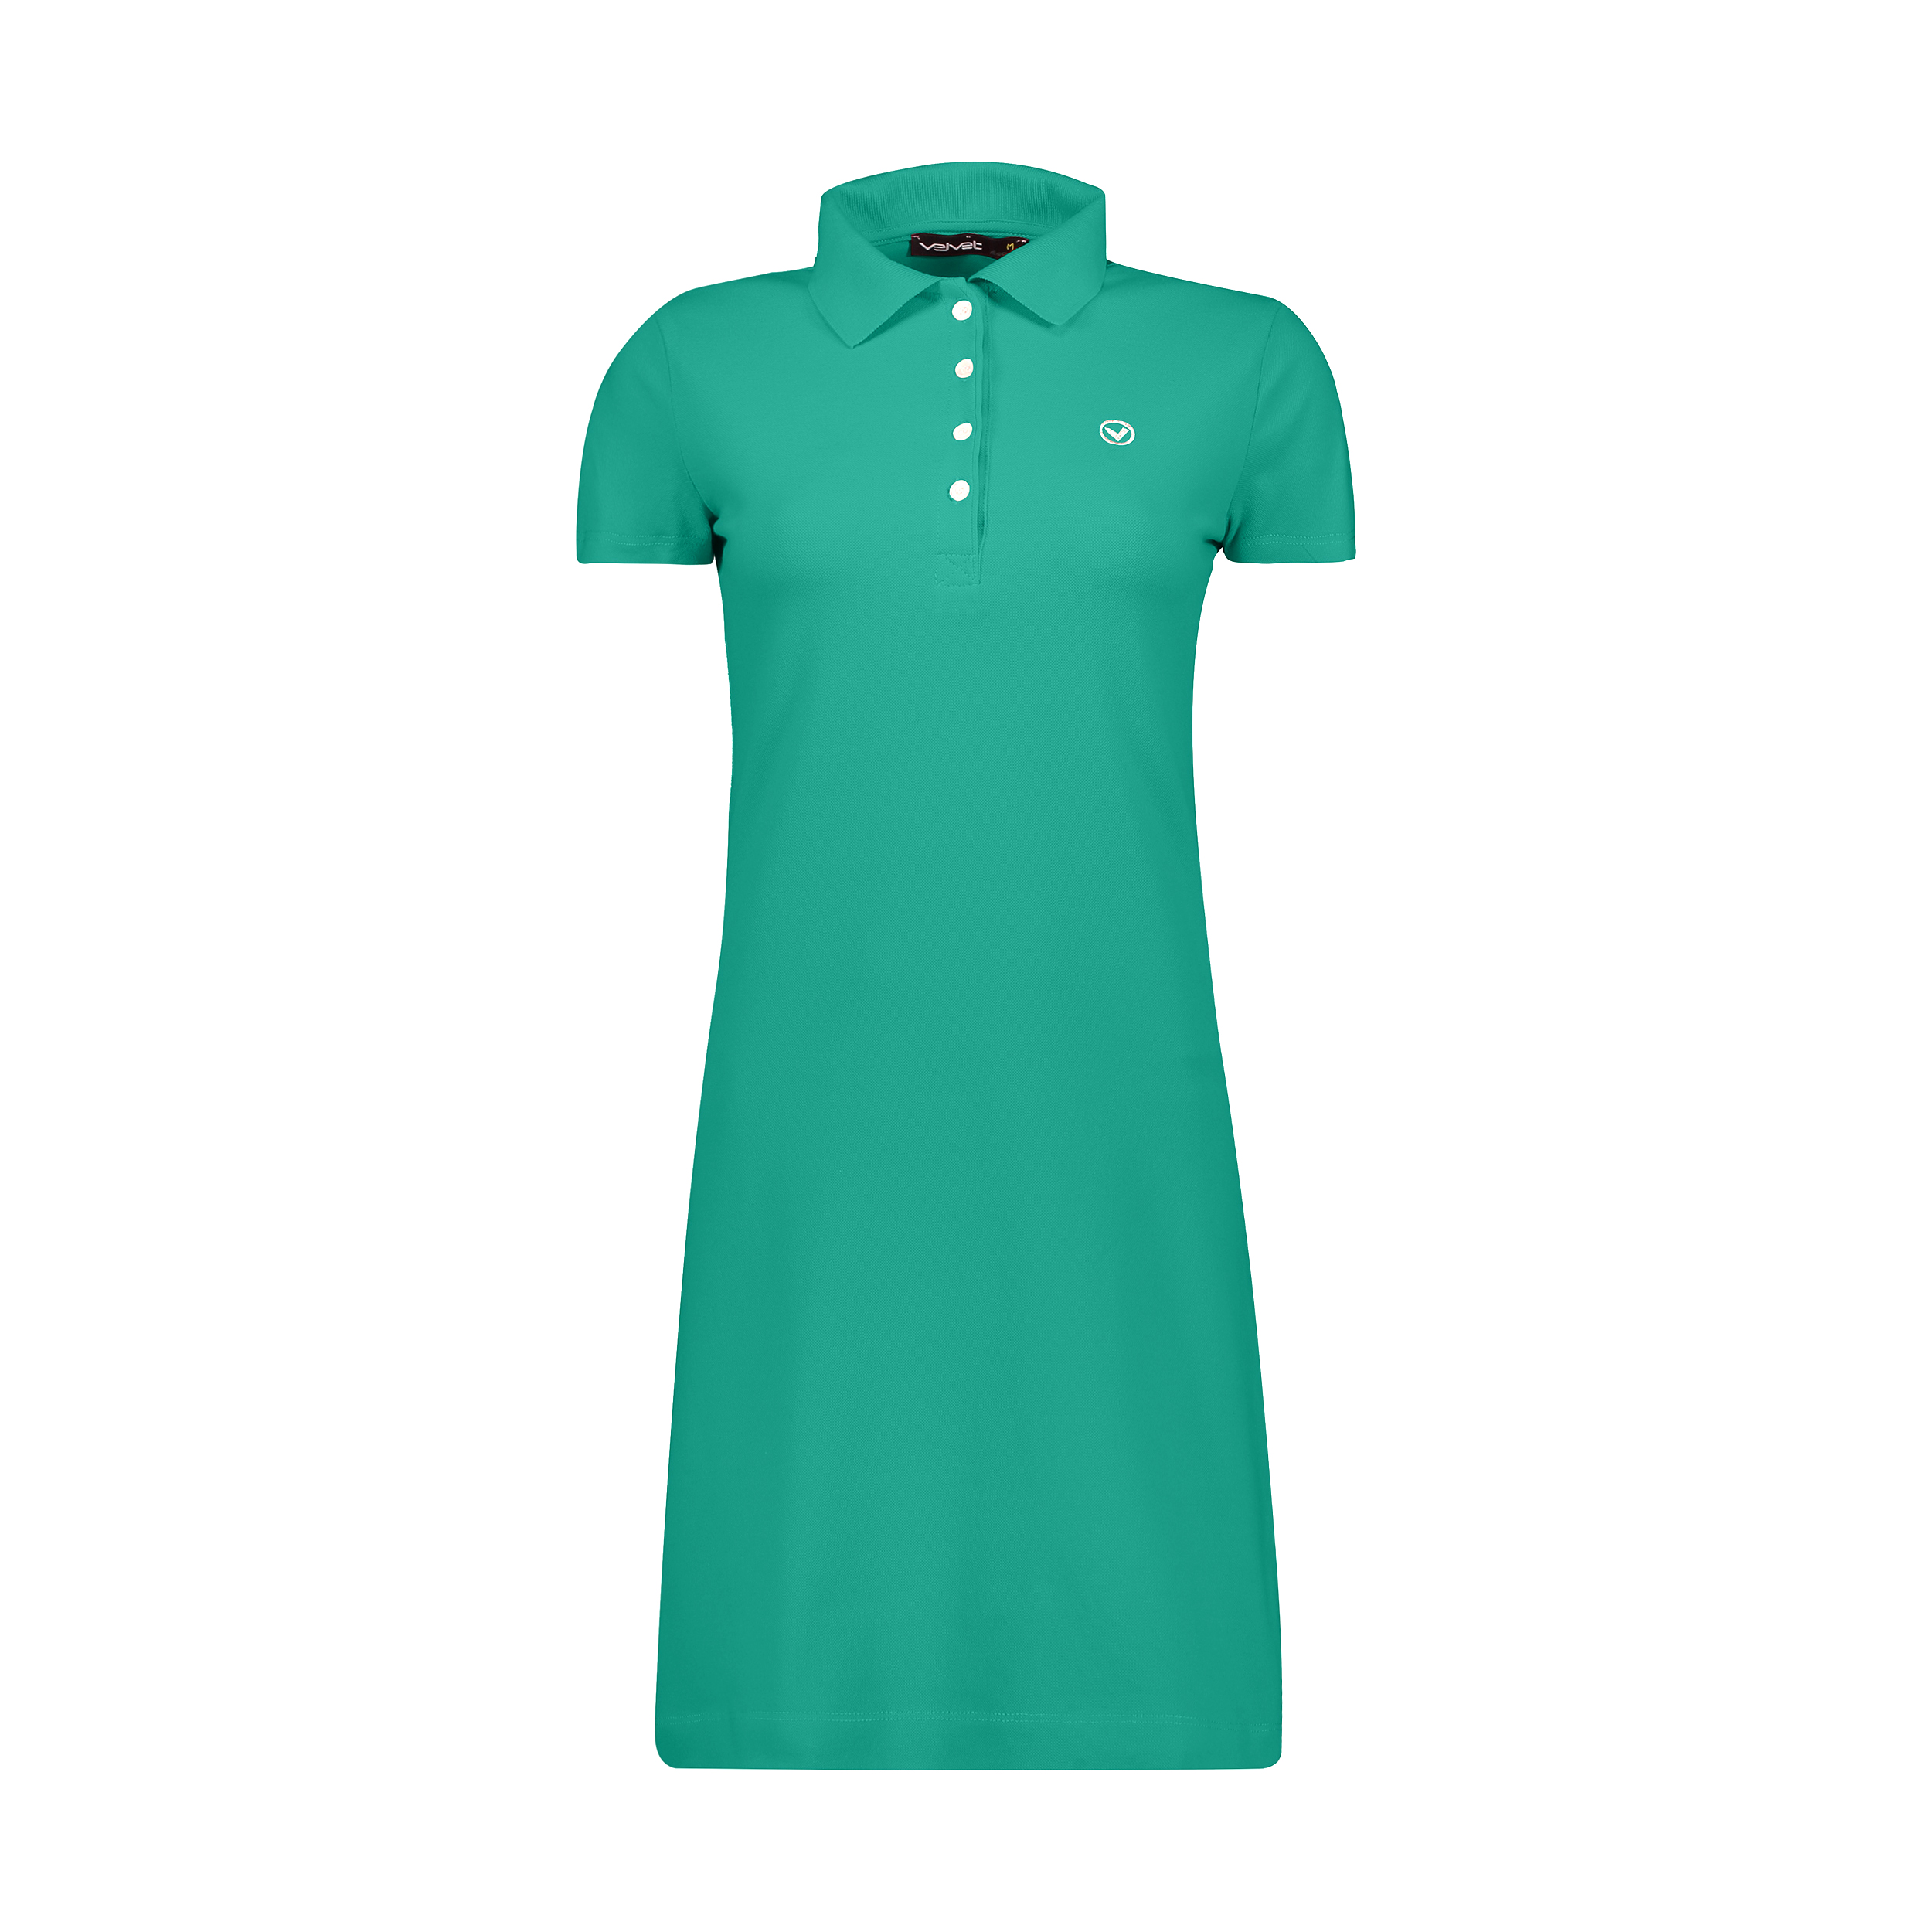 نکته خرید - قیمت روز پیراهن زنانه ولوت ریپابلیک کد N9810041-93 خرید